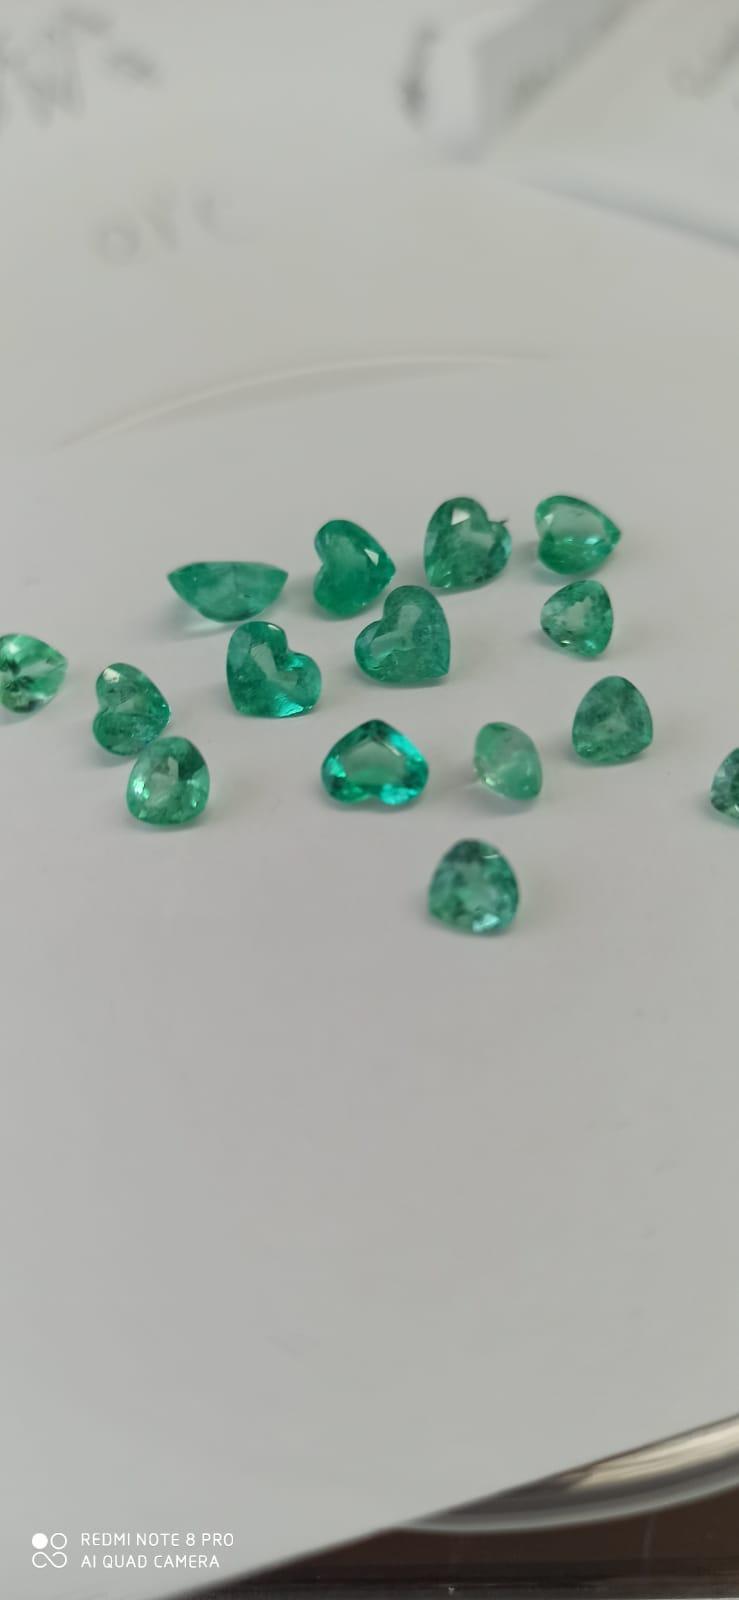 6.31 Ct.  Colombian Emerald Lot ( Heart Cut) 